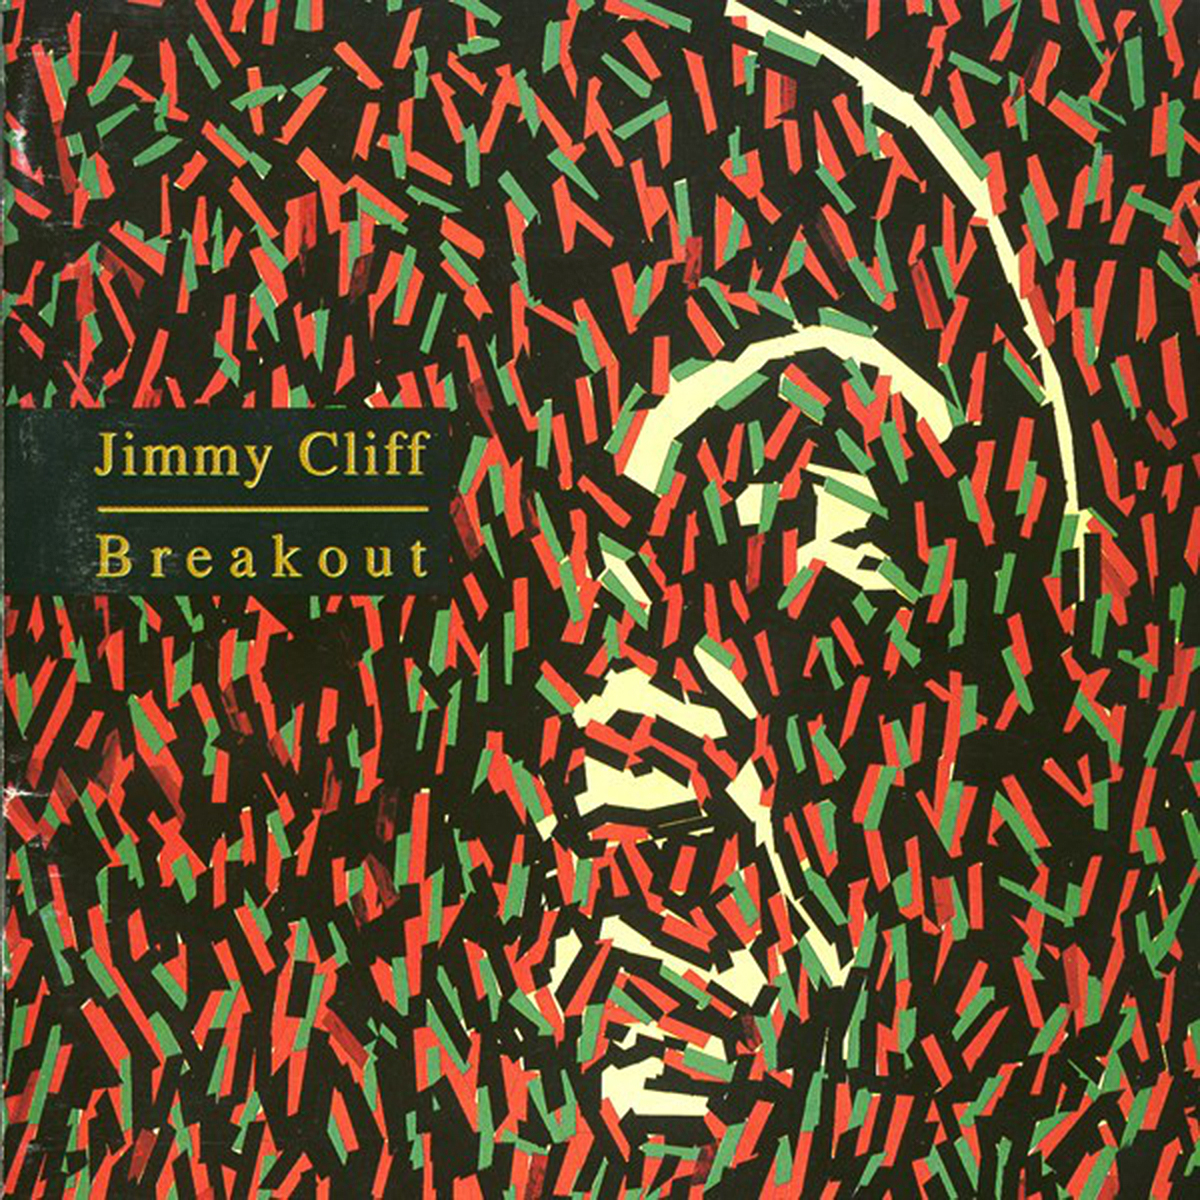 UbuntuFM Africa | Jimmy Cliff | "Breakout" (1992)